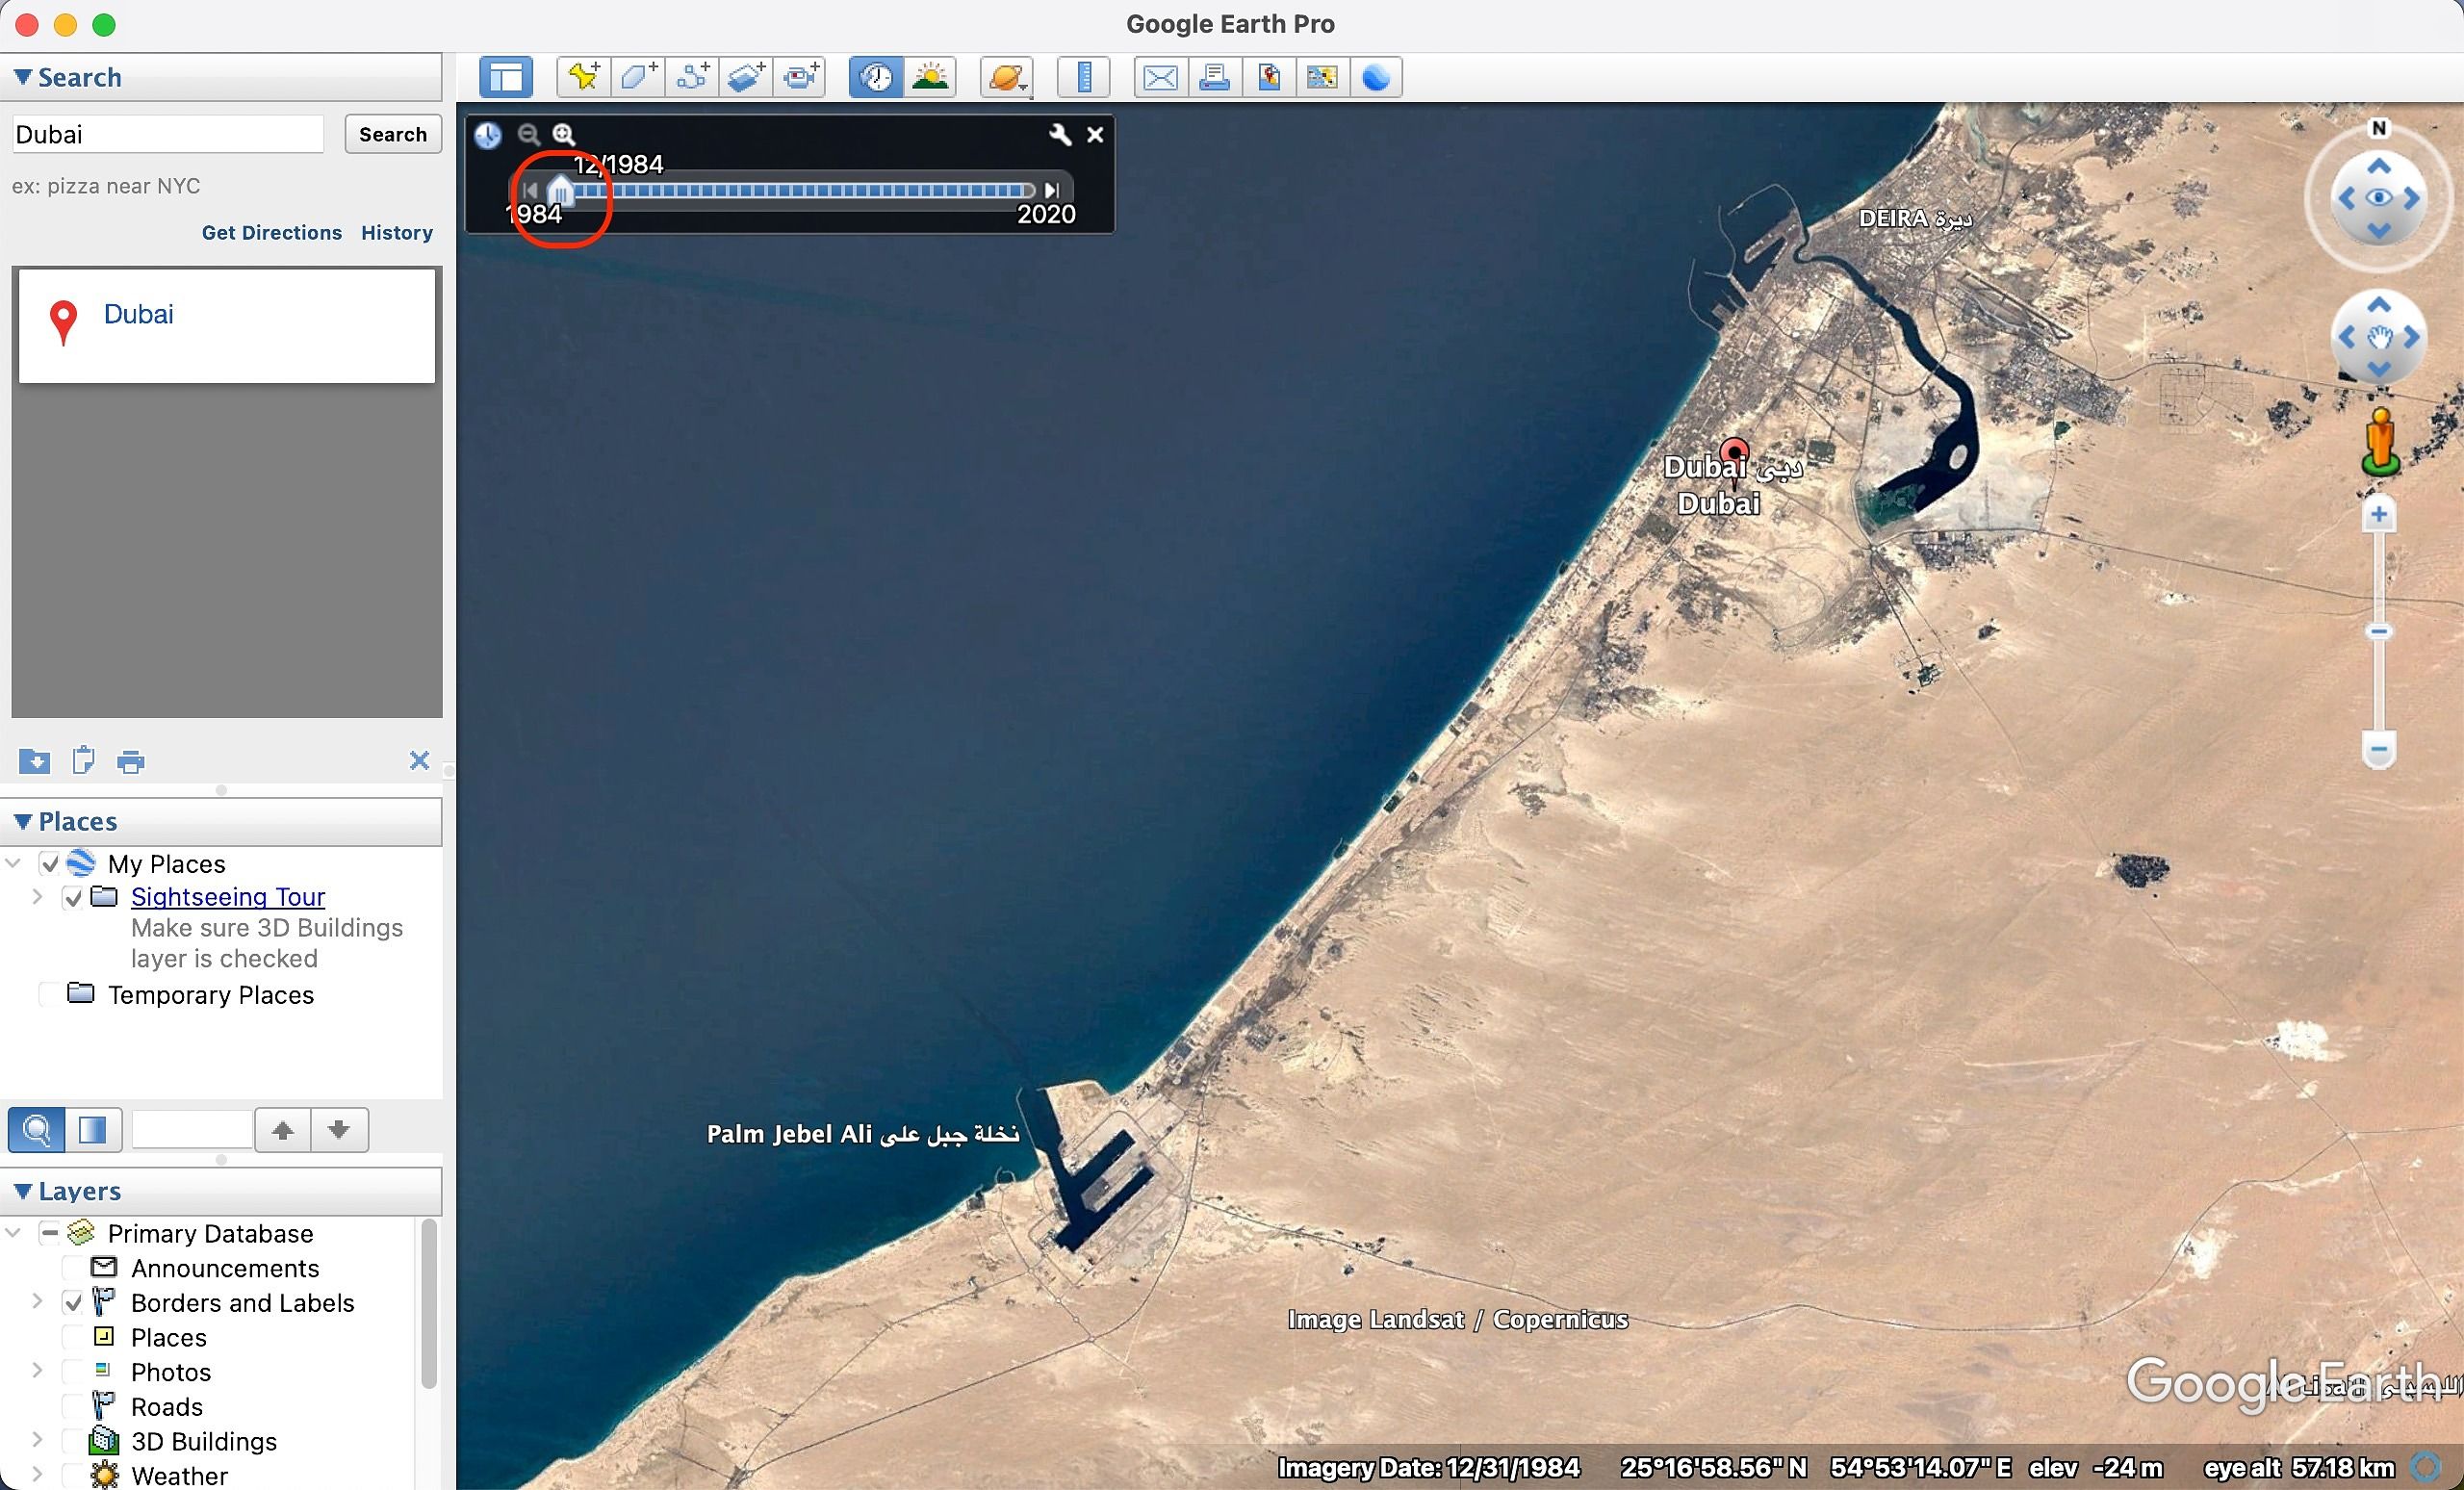 Percorrendo a hora no Google Earth Pro para o local selecionado em Dubai